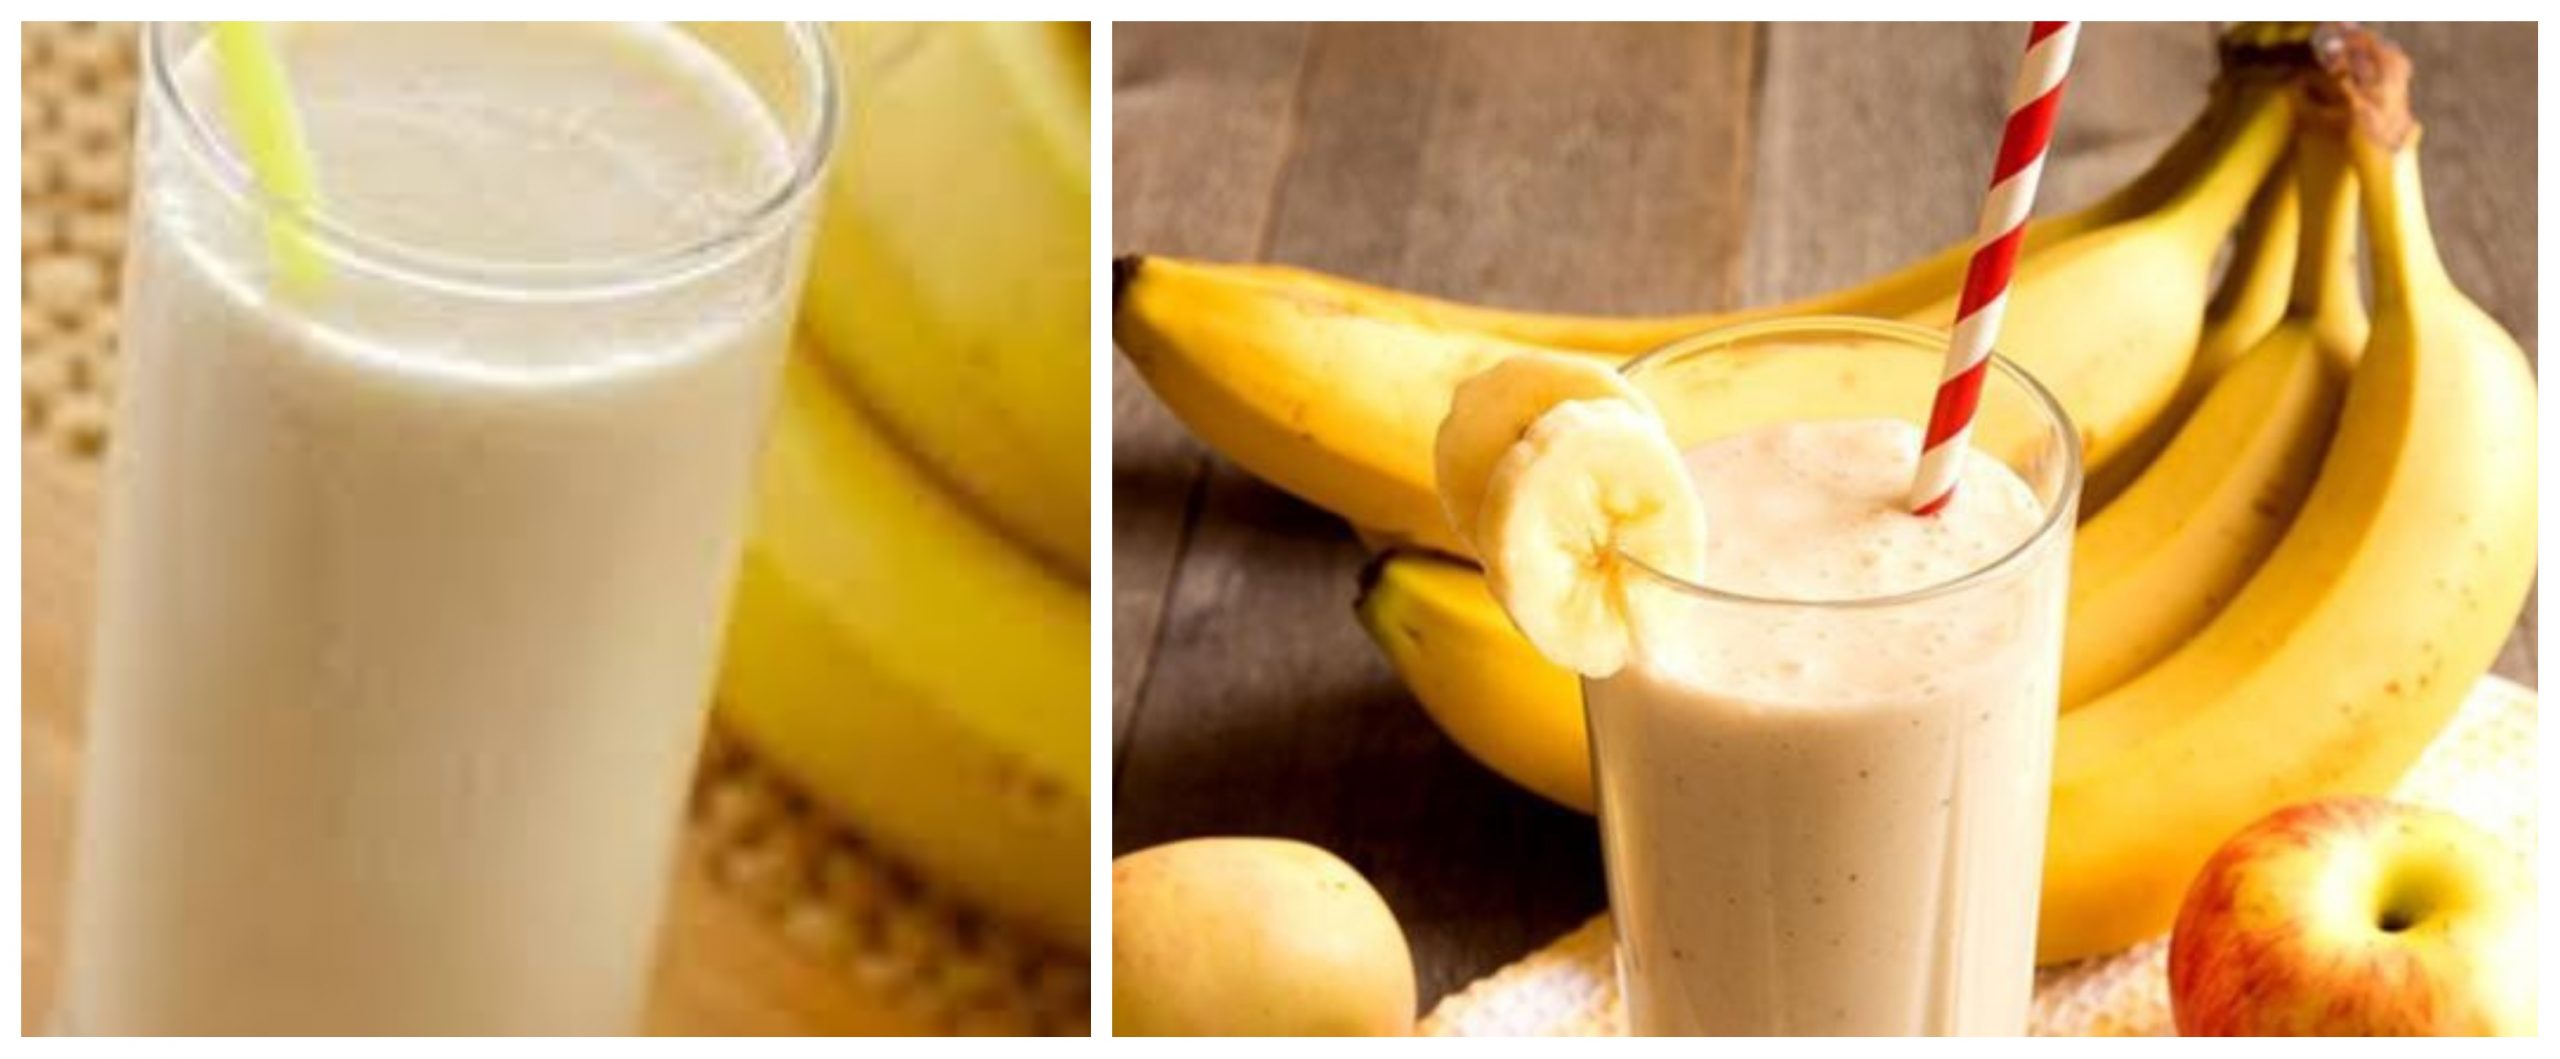 فوائد عصير الموز باللبن